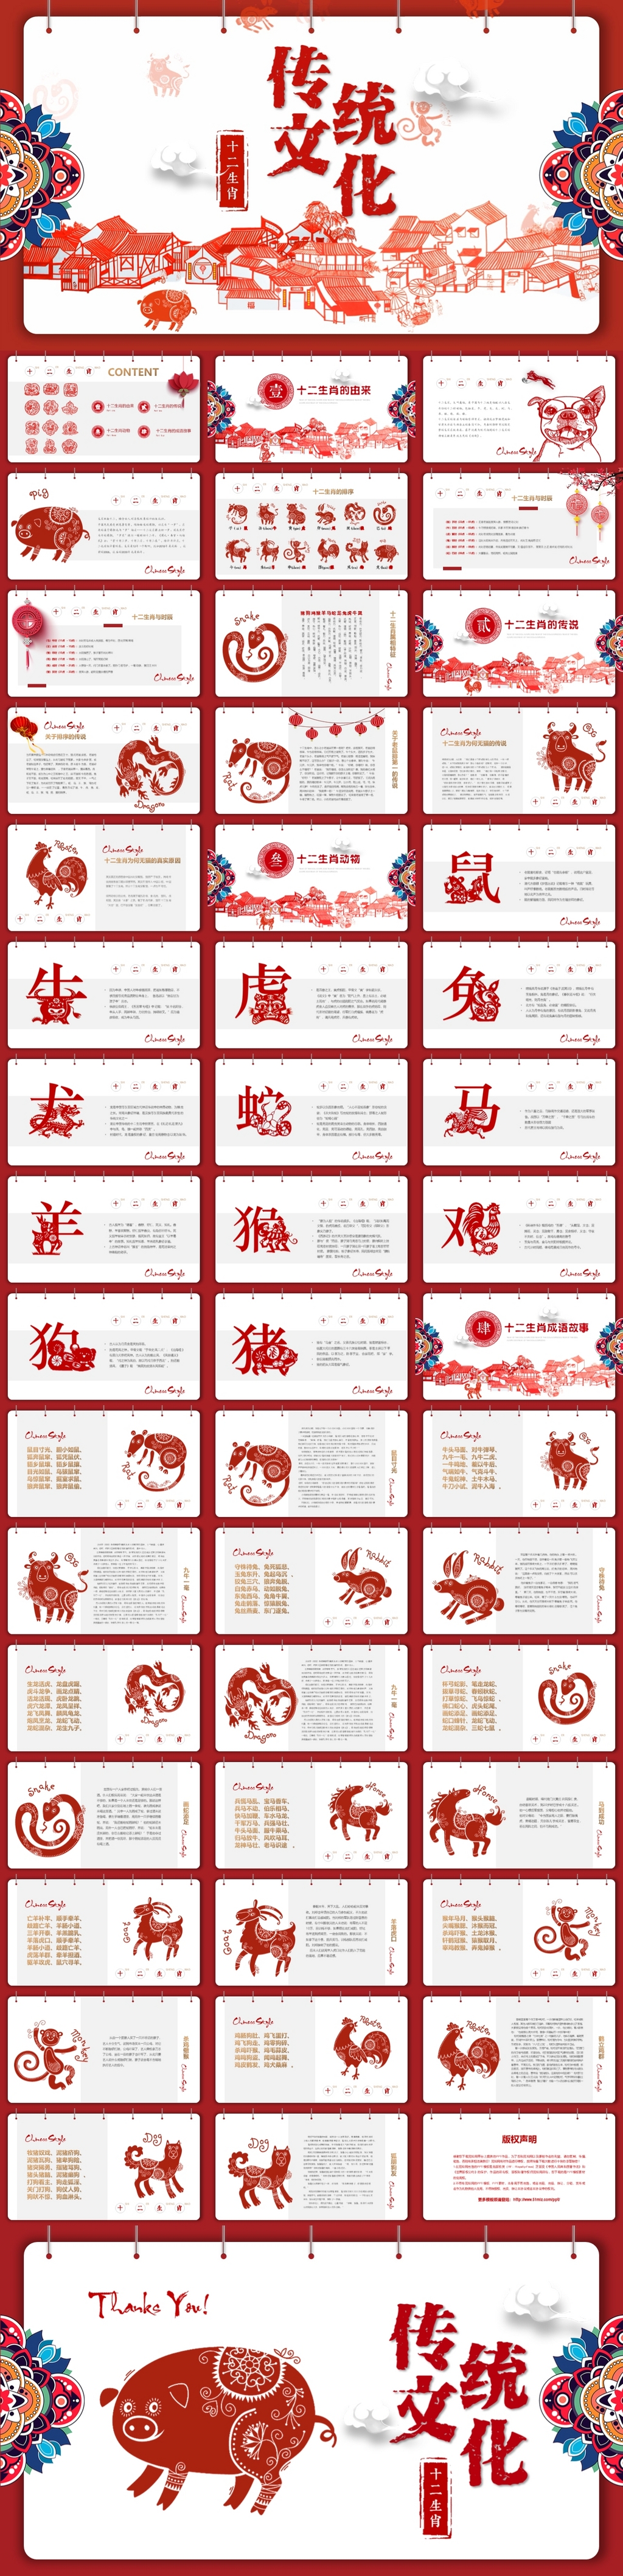 新年祝福剪纸片头中国风十二生肖PPT春节传统文化12属相中华民俗